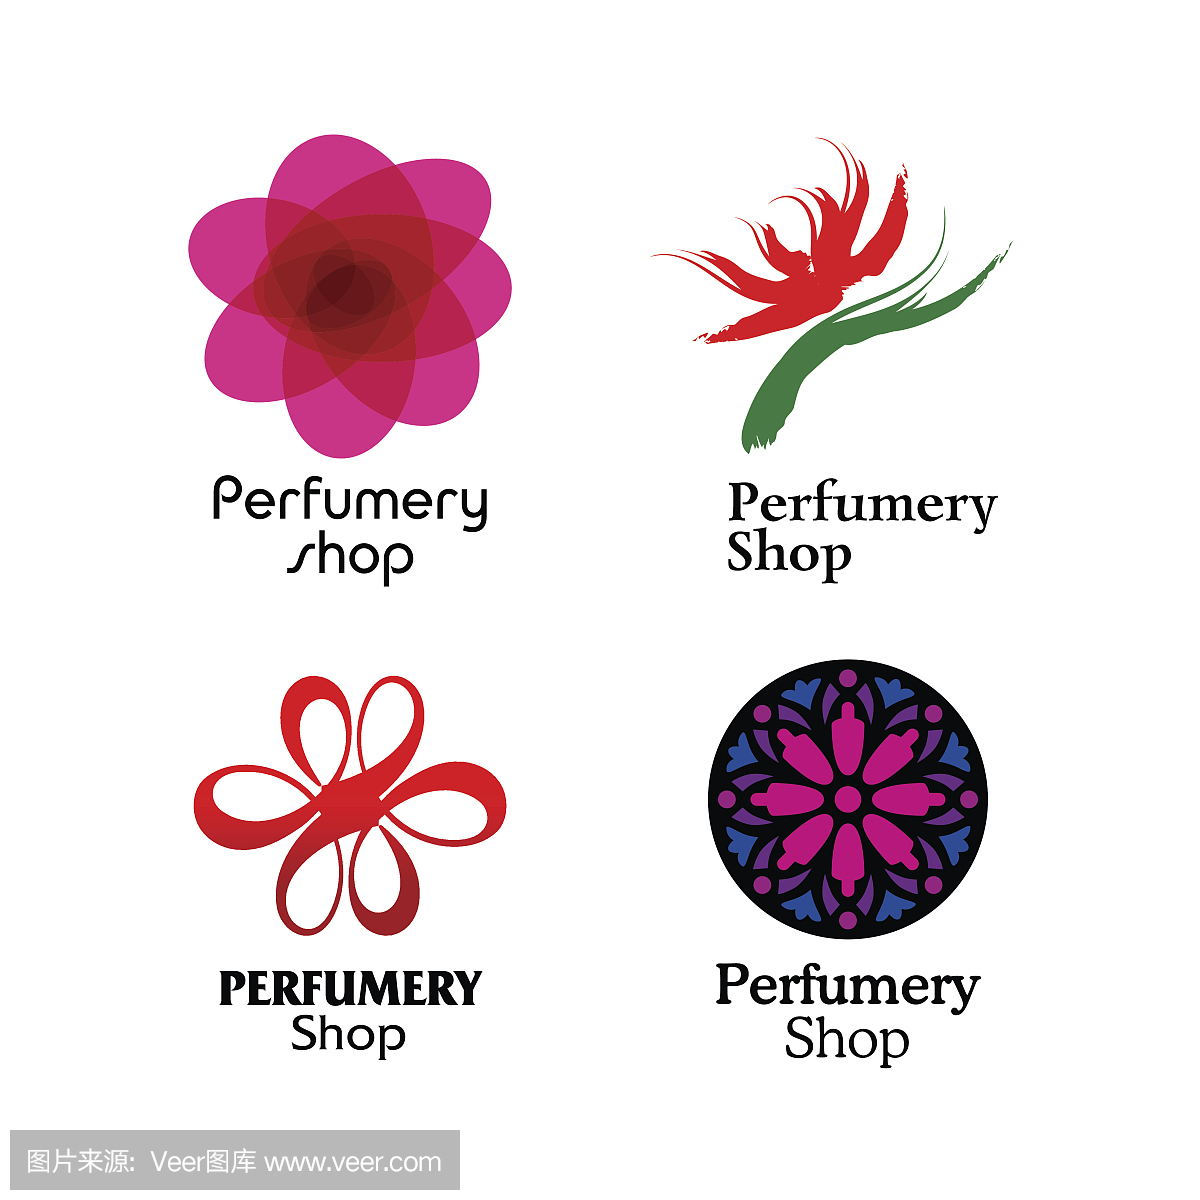 红色,绿色和紫色香水品牌标志集